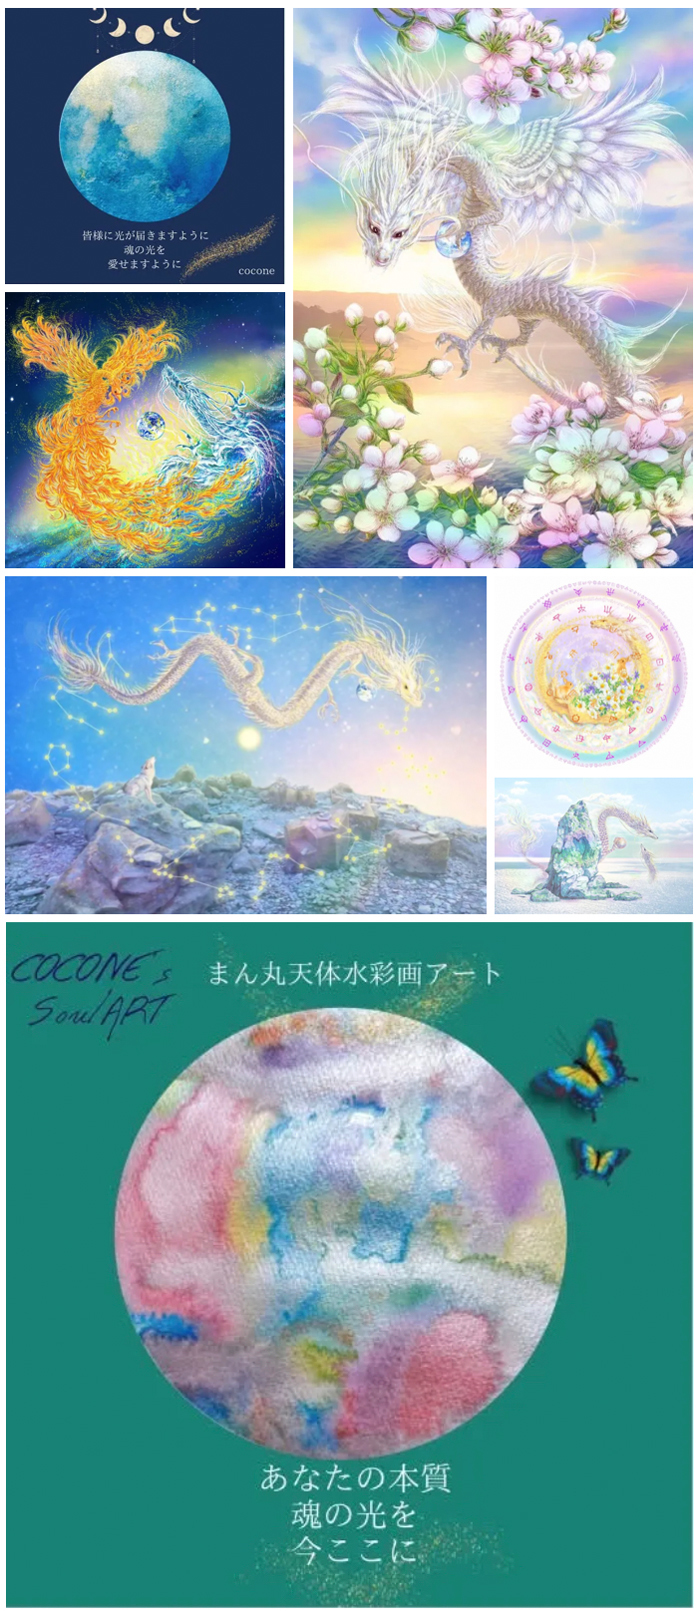 虹彩アート展2